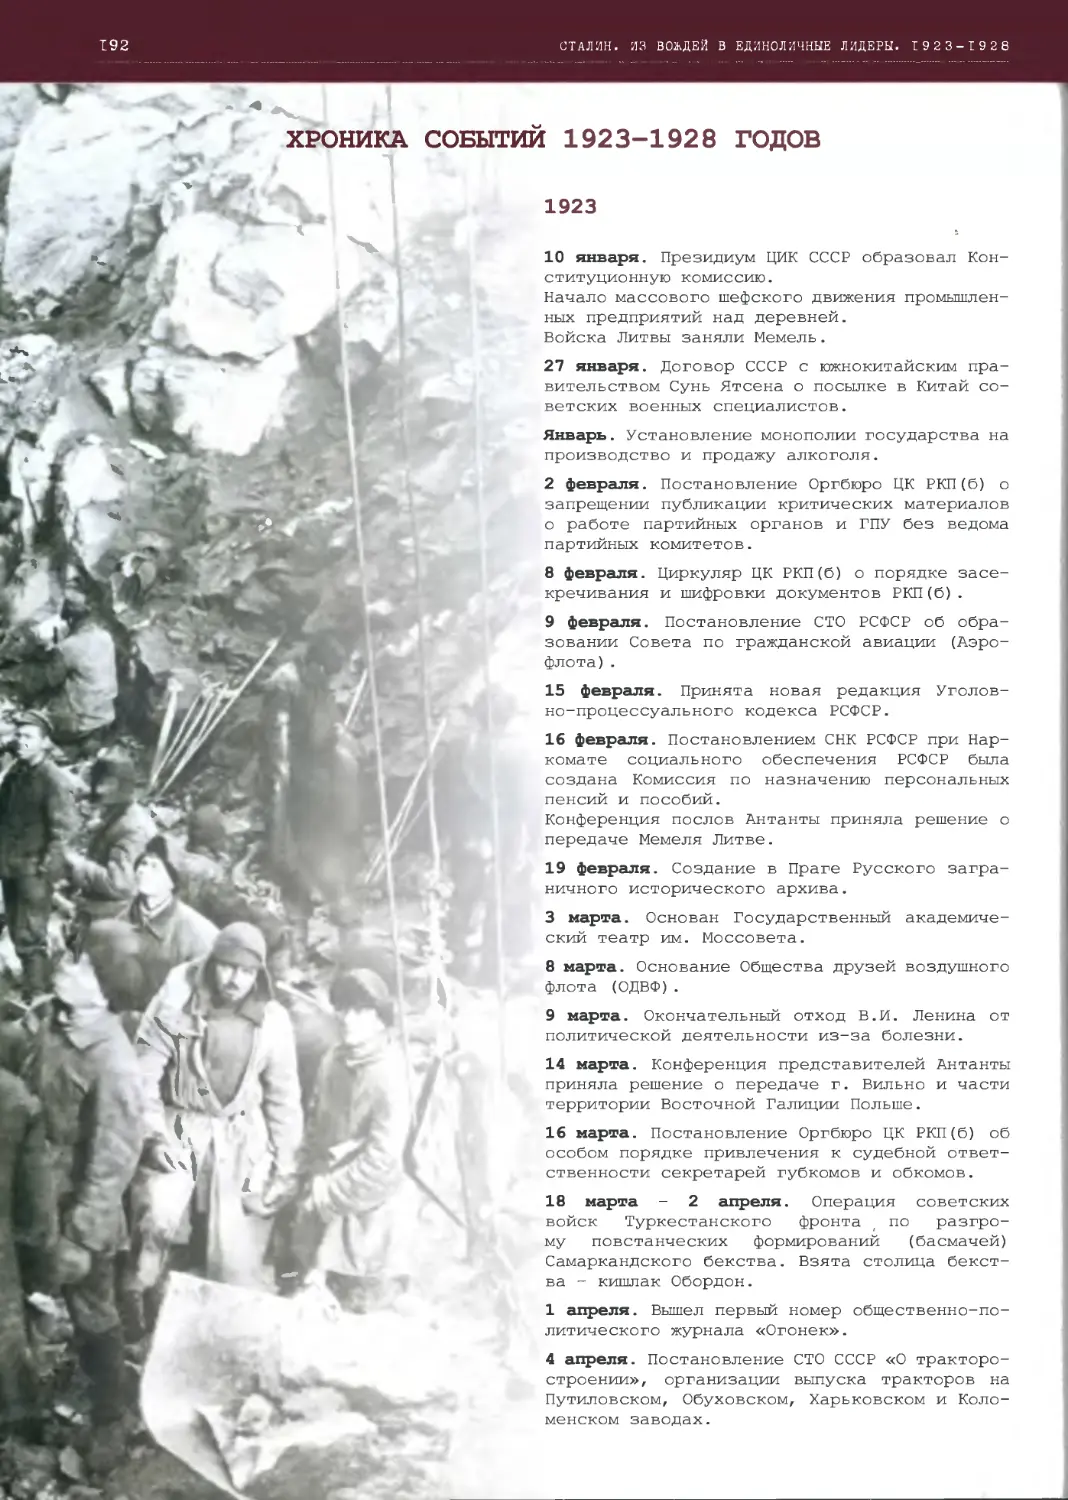 ХРОНИКА СОБЫТИИ 1923-1928 ГОДОВ